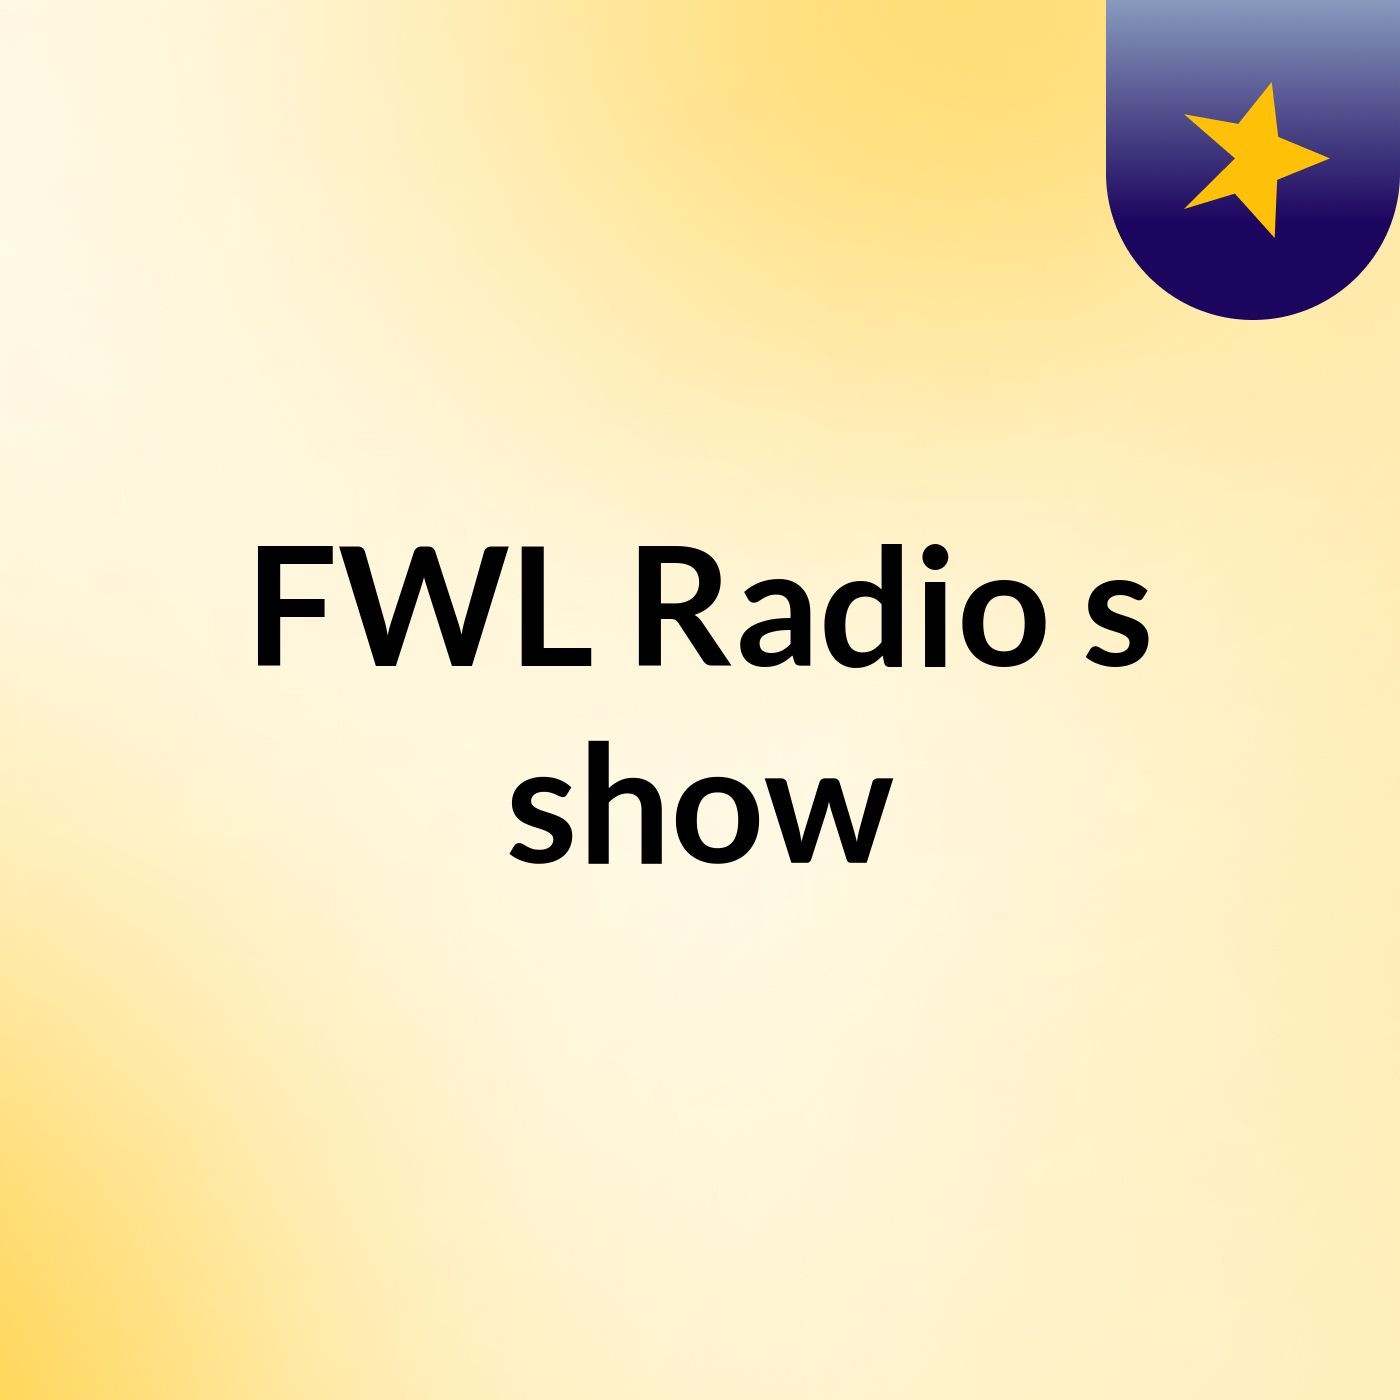 FWL Radio's show